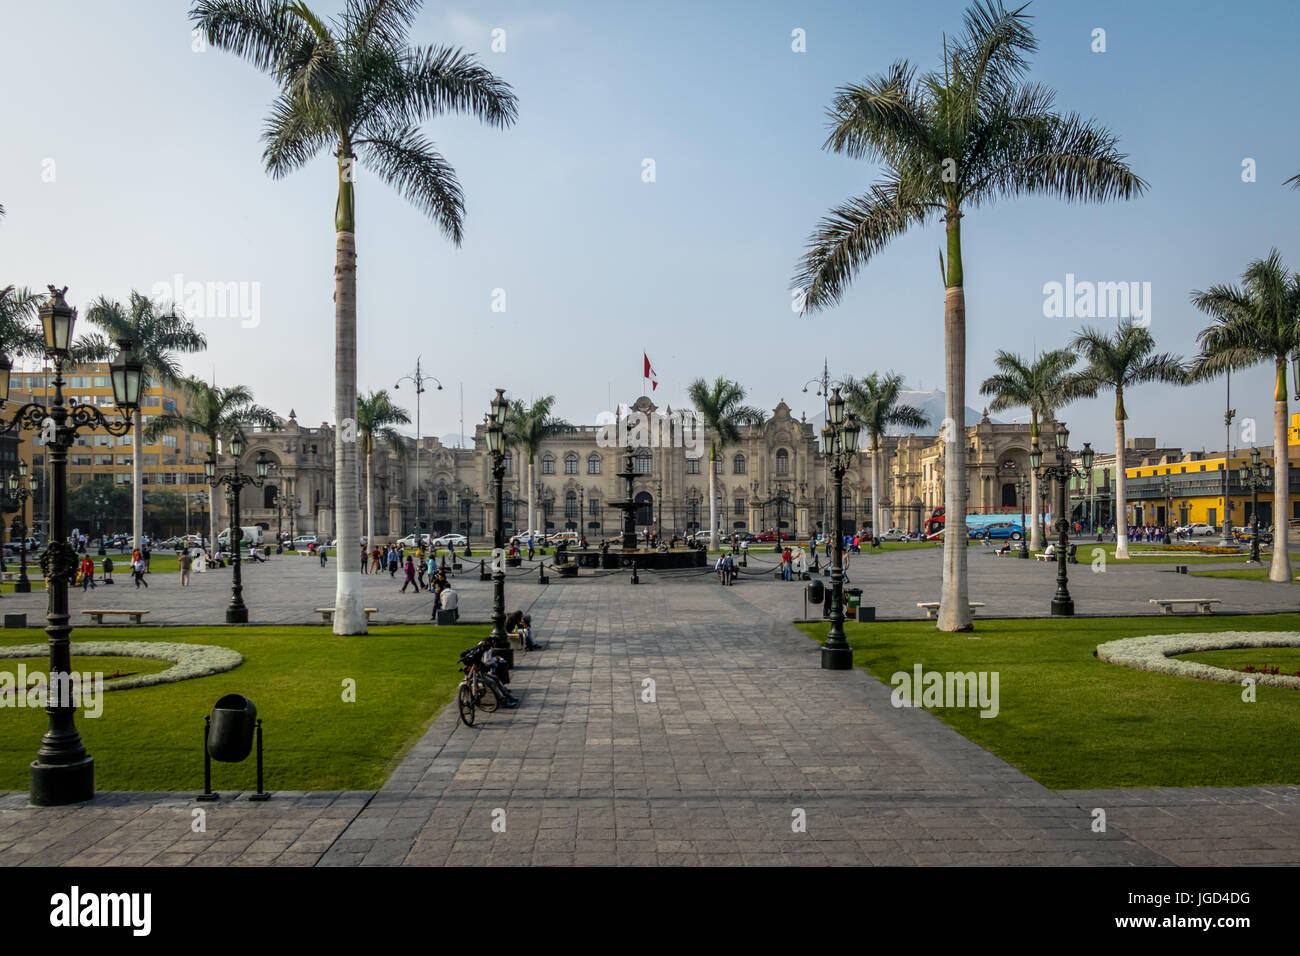 Government Palace of Peru at Plaza Mayor - Lima, Peru Stock Photo